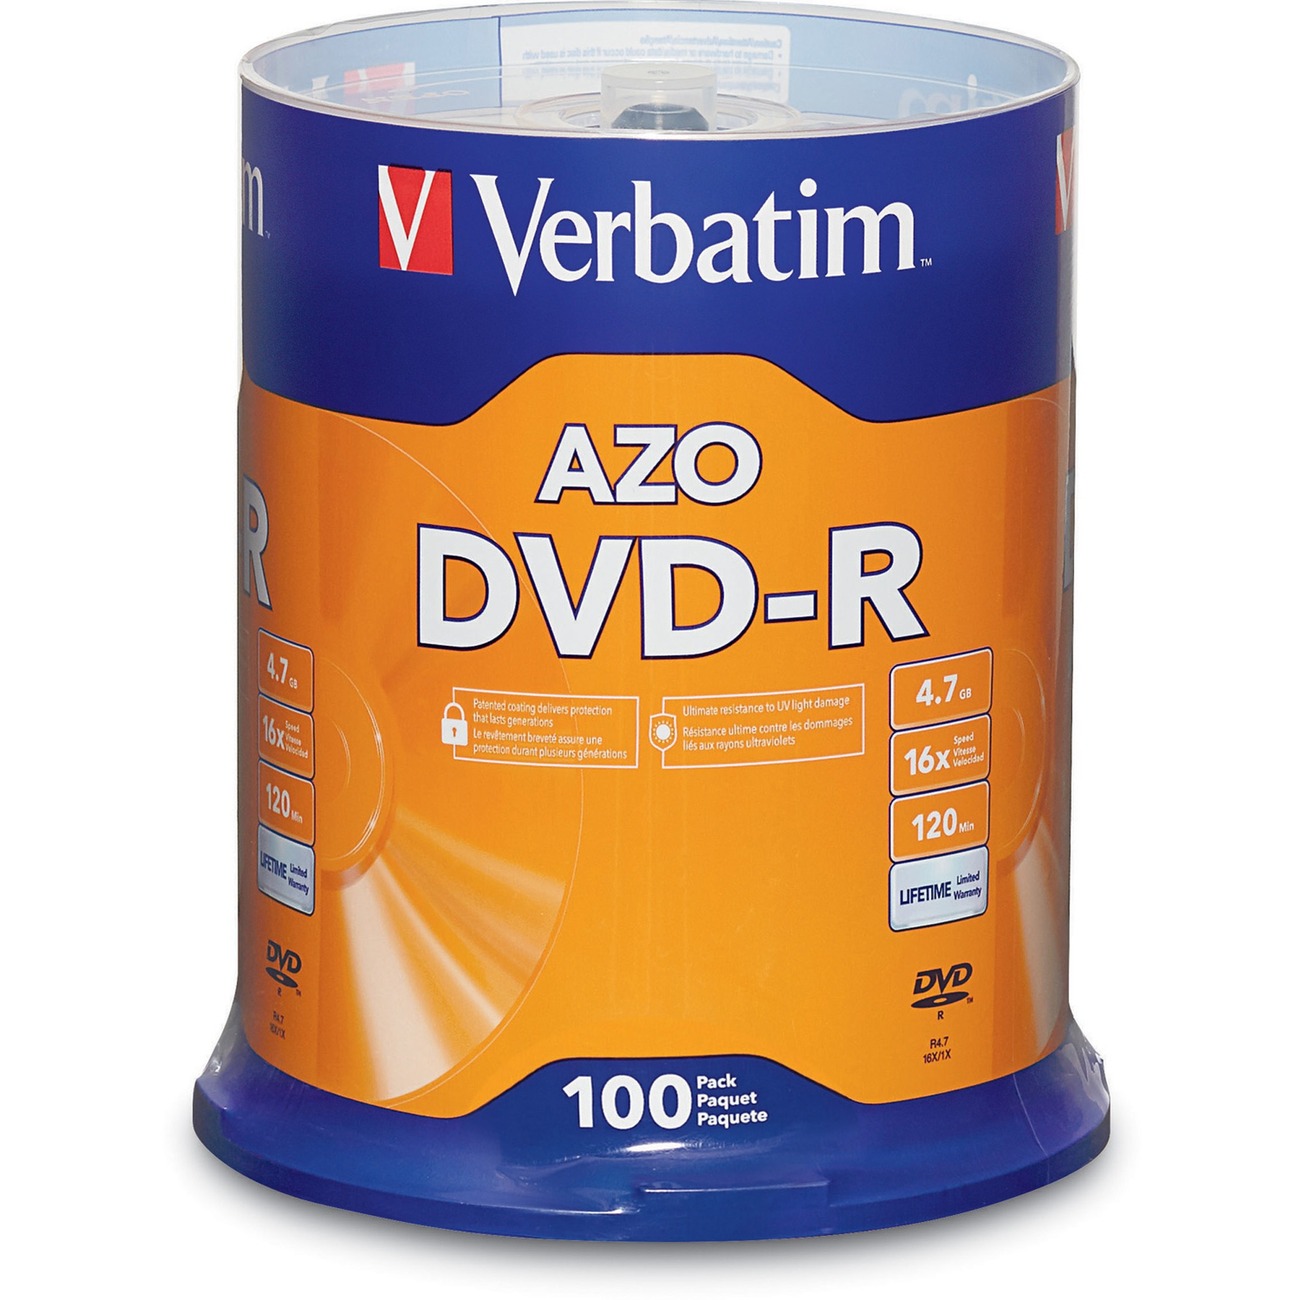 CD-R Verbatim azo. Verbatim DVD-R. CD Verbatim azo. Verbatim DATALIFEPLUS. Dvd r 100